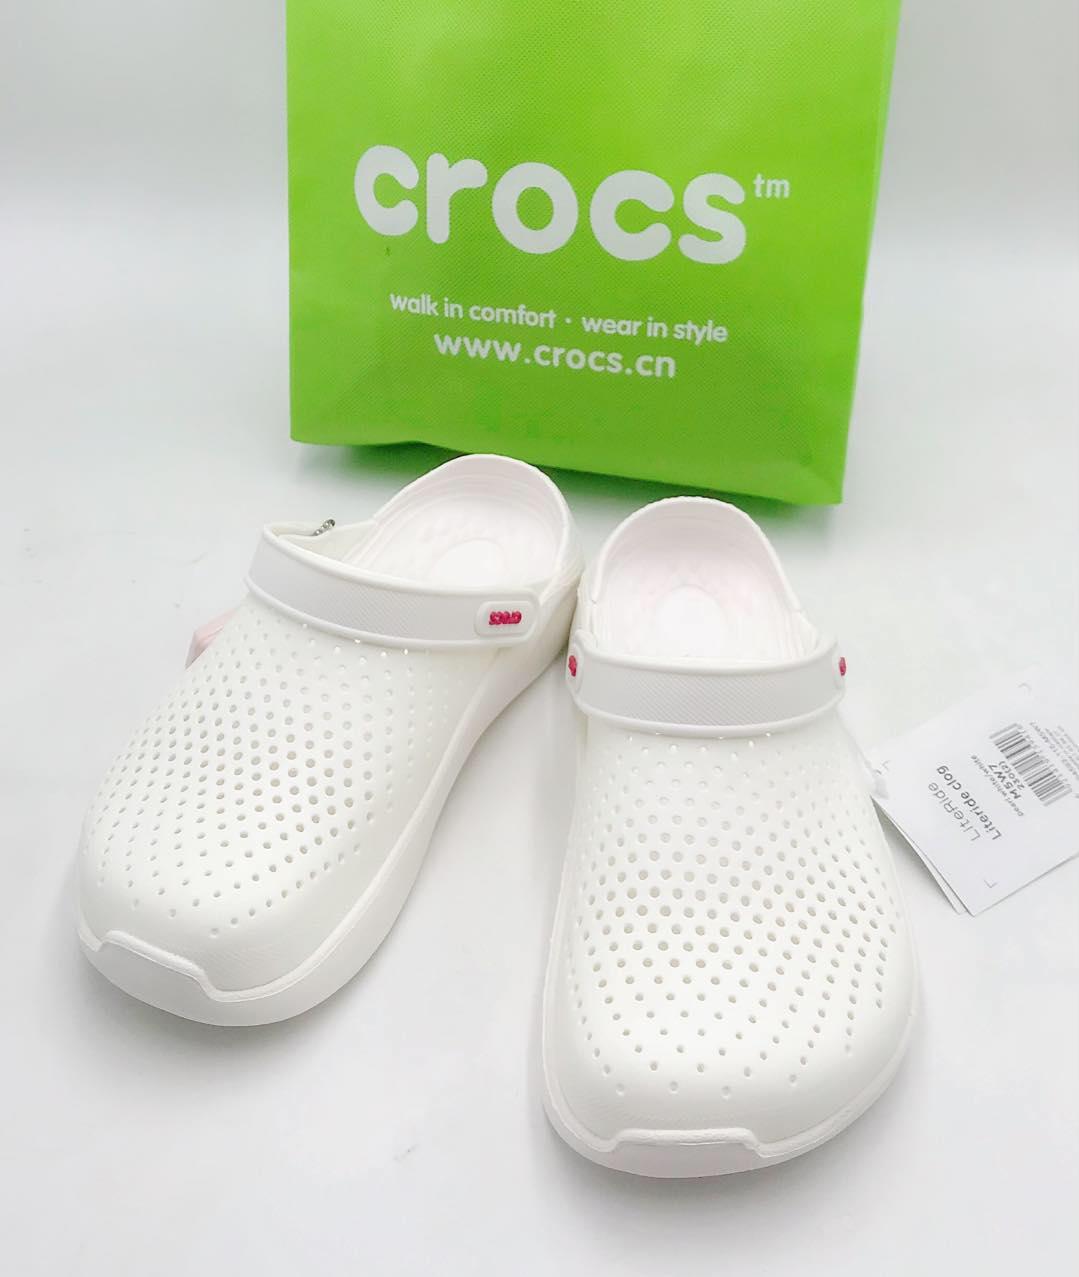 crocs white for men